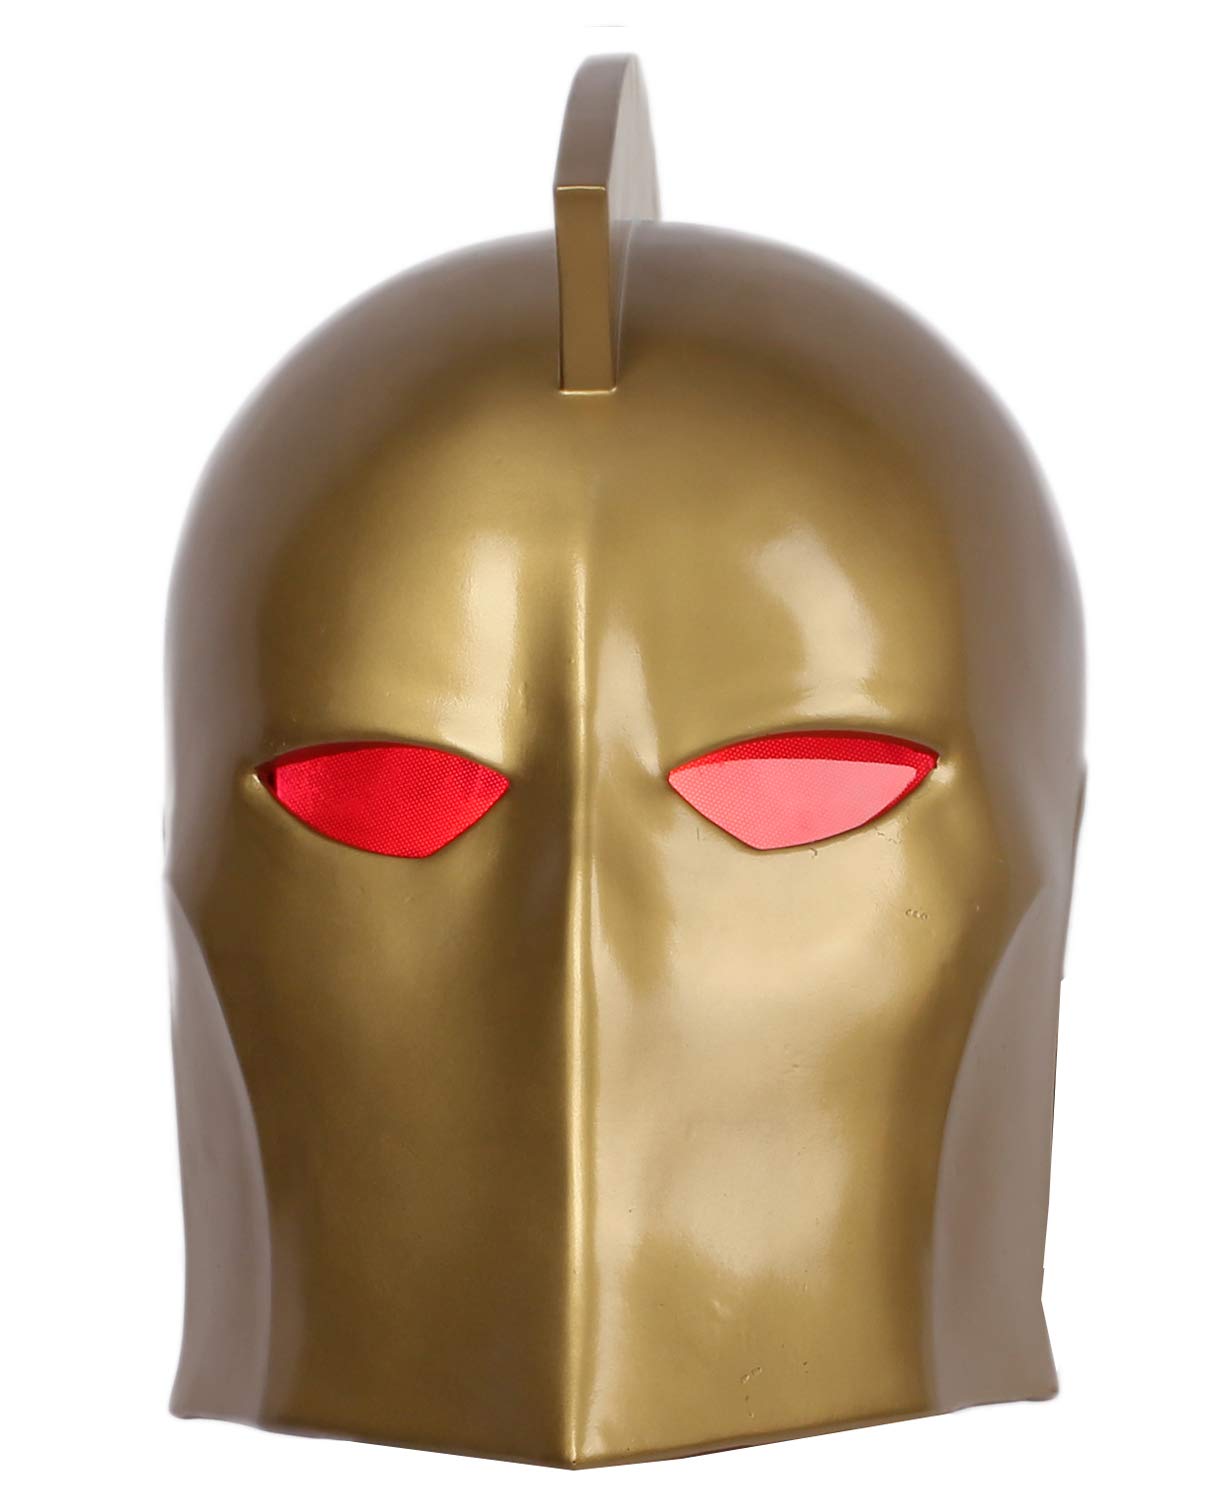 Dr Fate Helmet Deluxe Resin Full Head Golden Cosplay LEDs Mask Xcoser